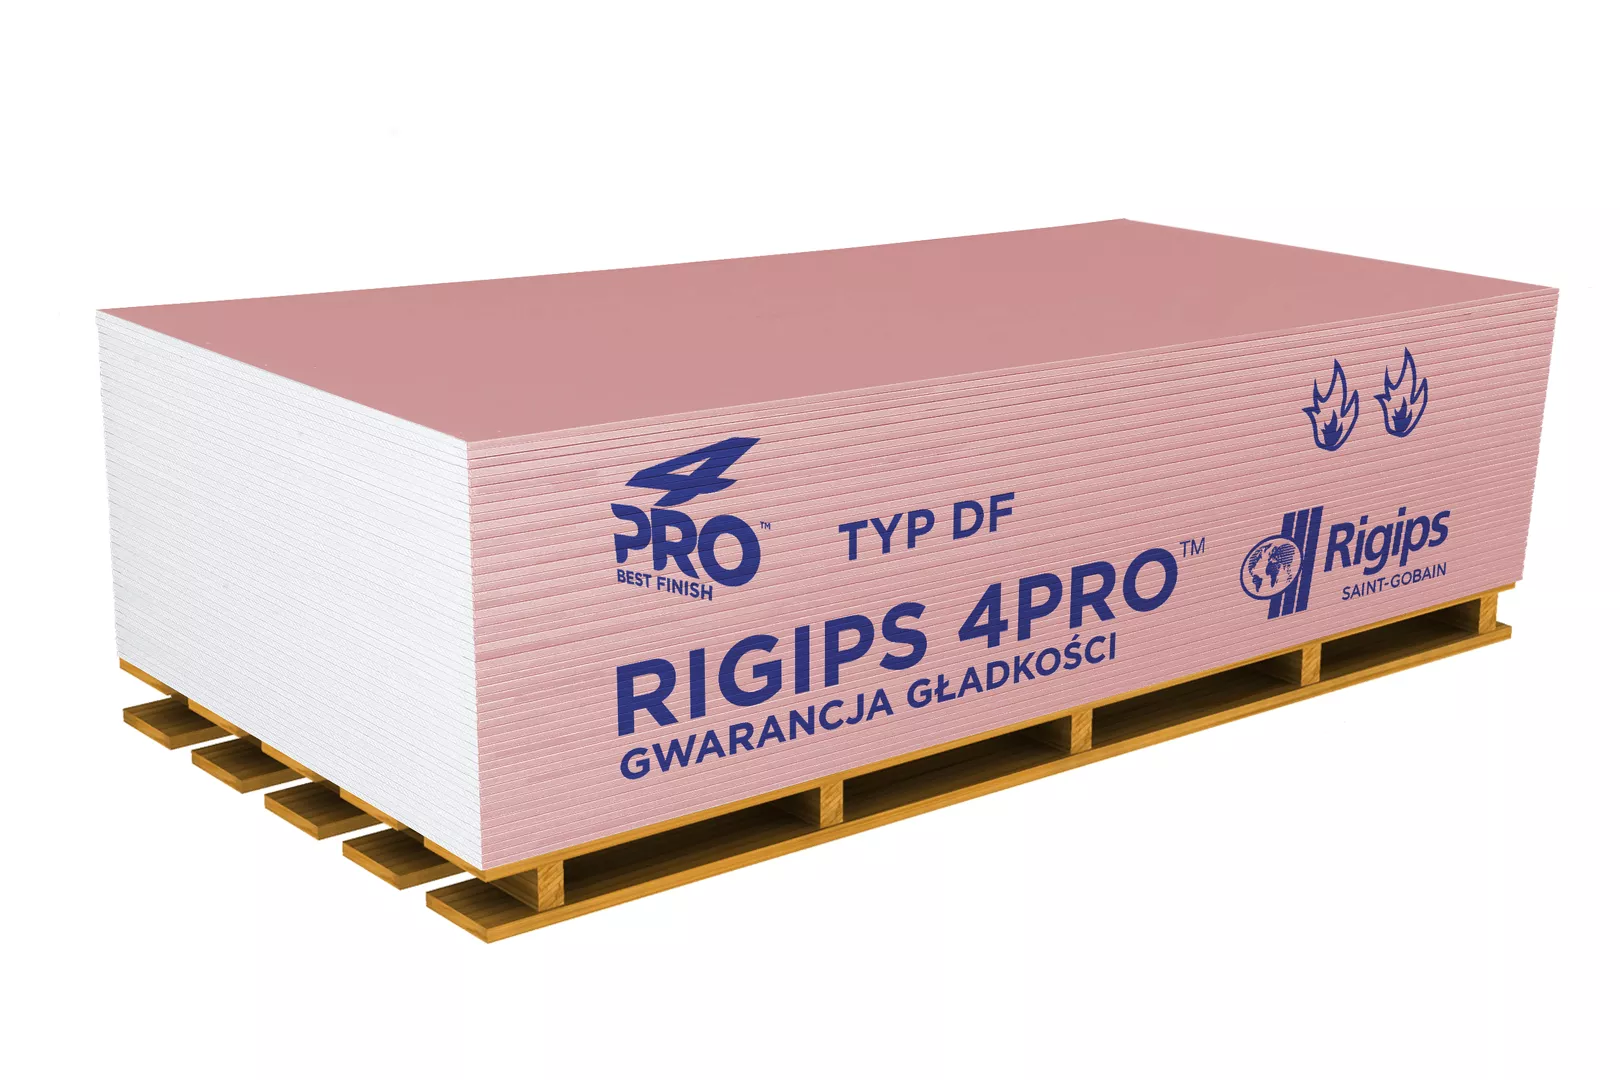 Płyta gipsowo-kartonowa RIGIPS 4PRO Fire+ typ DF 1,2 x 2,0 mb